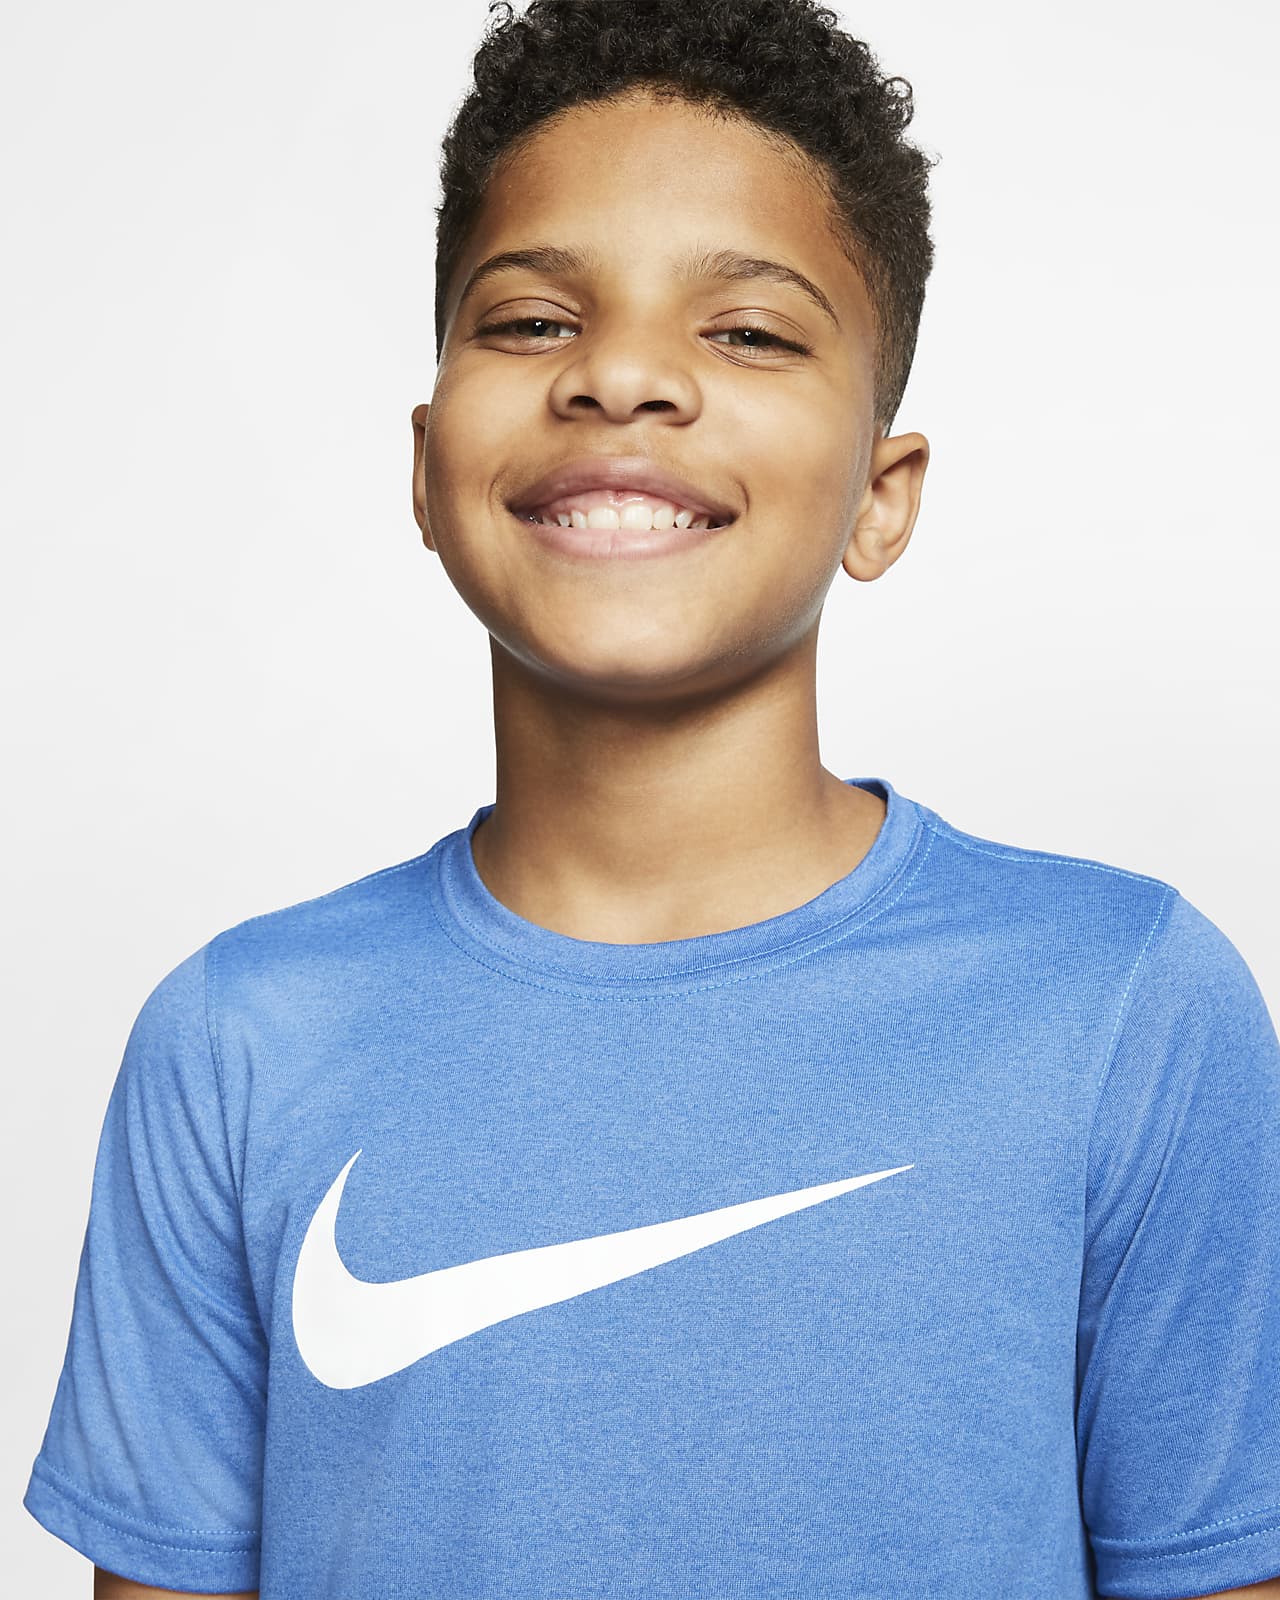 Nike公式 ナイキ Dri Fit ジュニア スウッシュ トレーニング Tシャツ オンラインストア 通販サイト